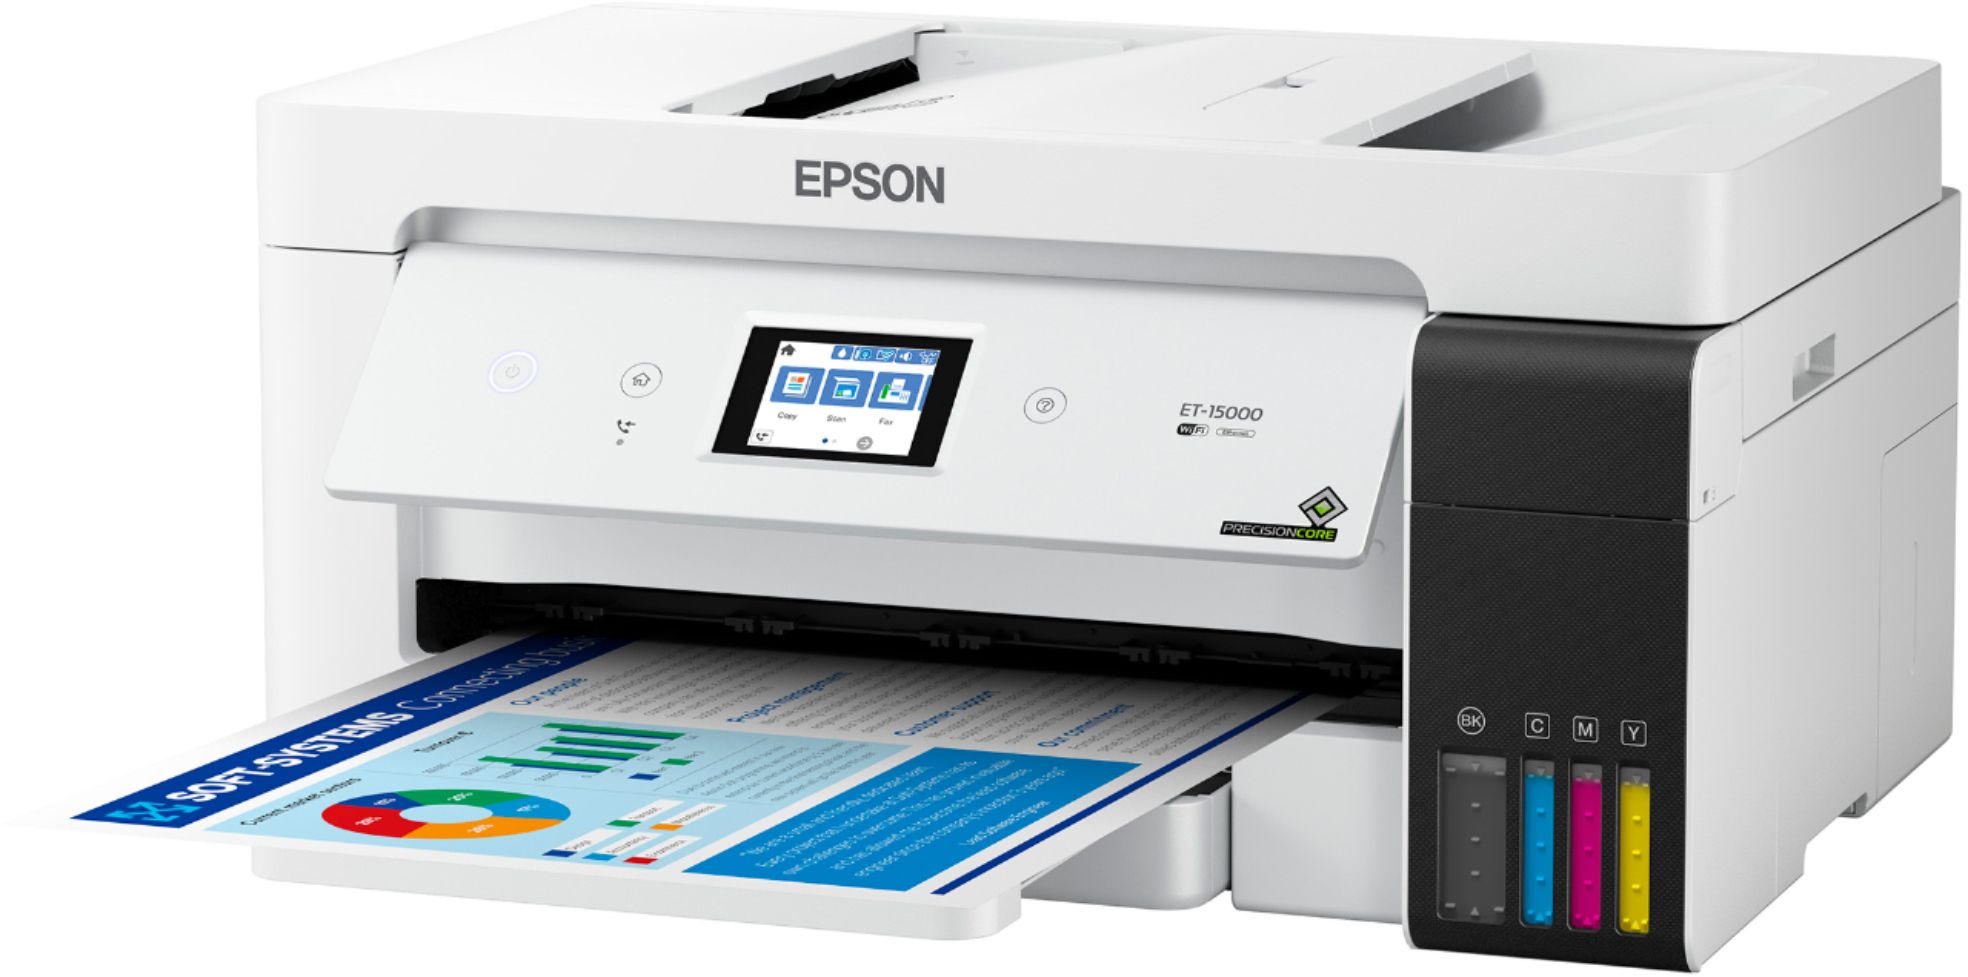 Best Buy: Epson Expression Premium EcoTank ET-7750 Wireless All-in